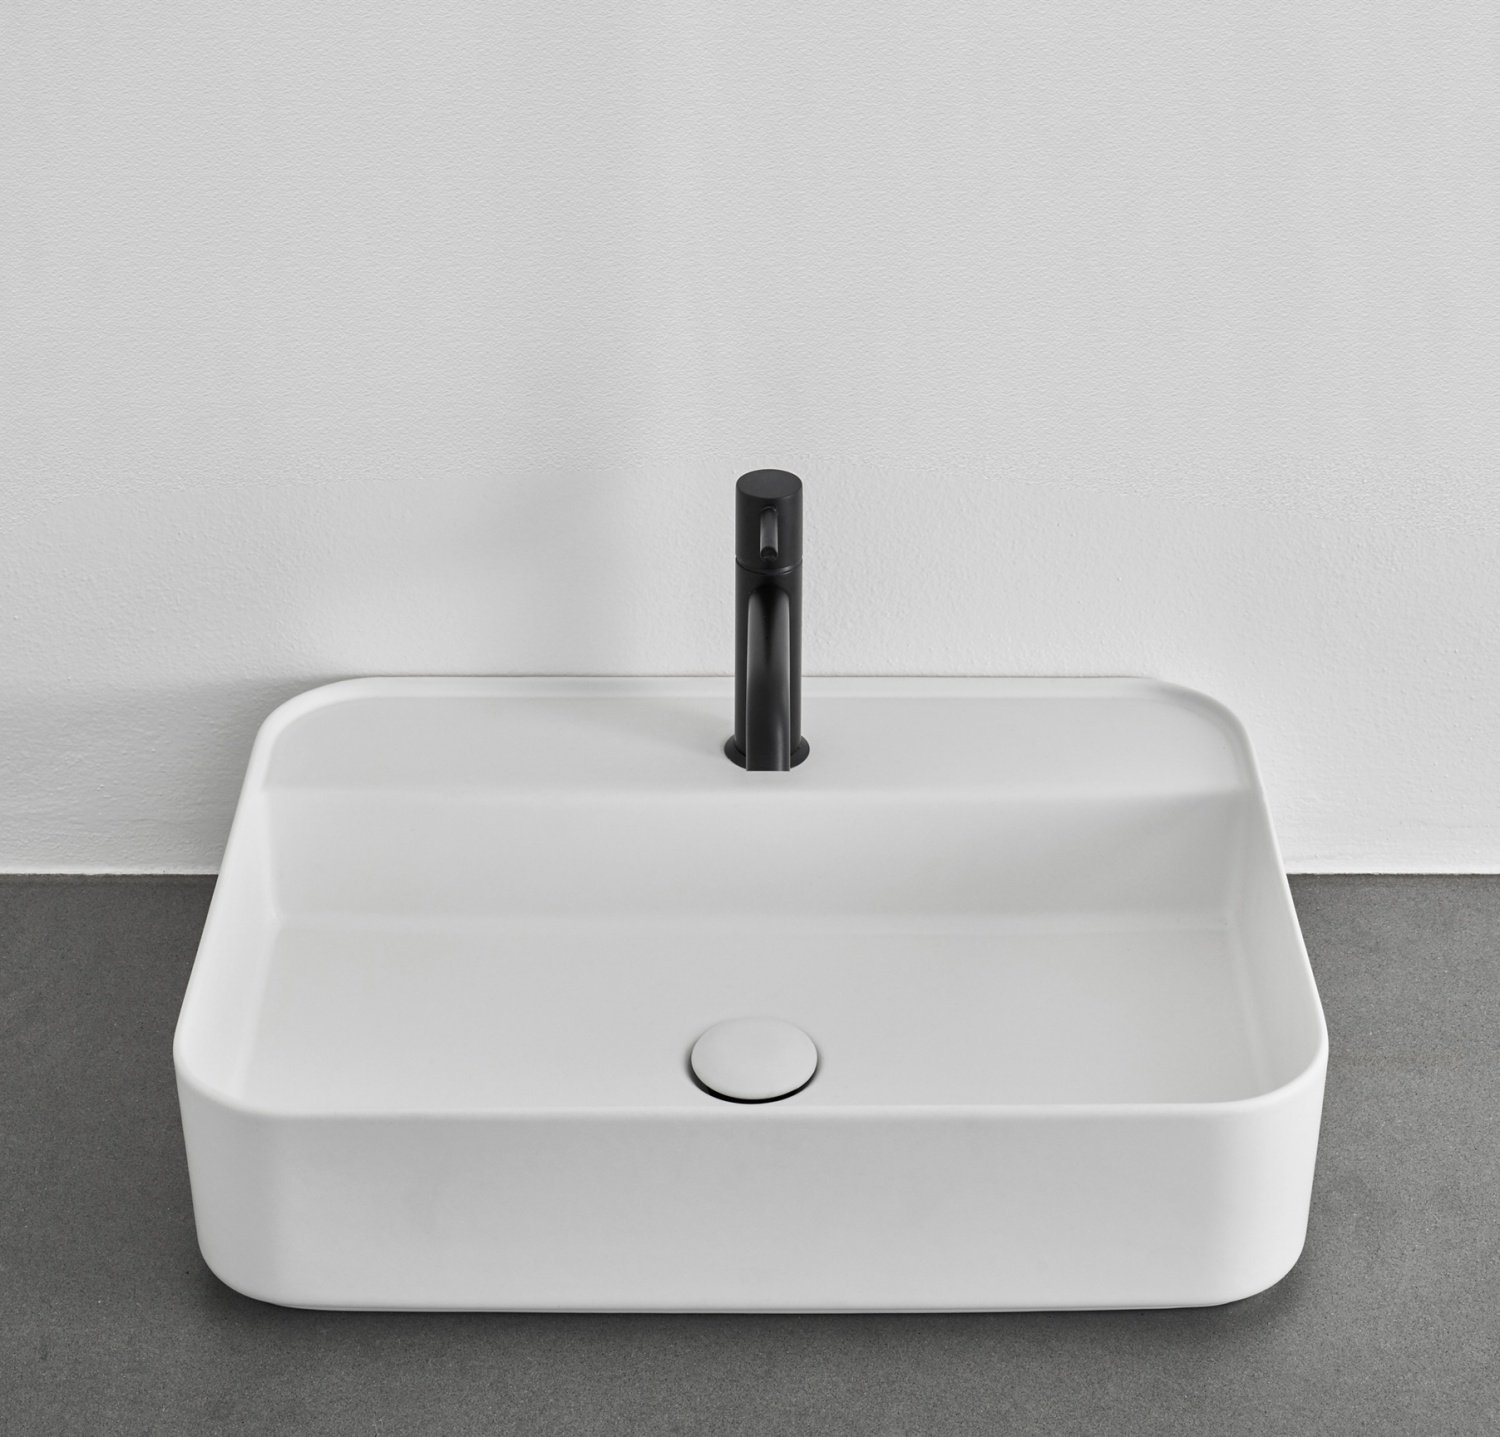 Ceramica CIELO Shui Comfort SHCOLARF Bia Раковина для ванной комнаты 60*43 см | подвесная - накладная (белый)